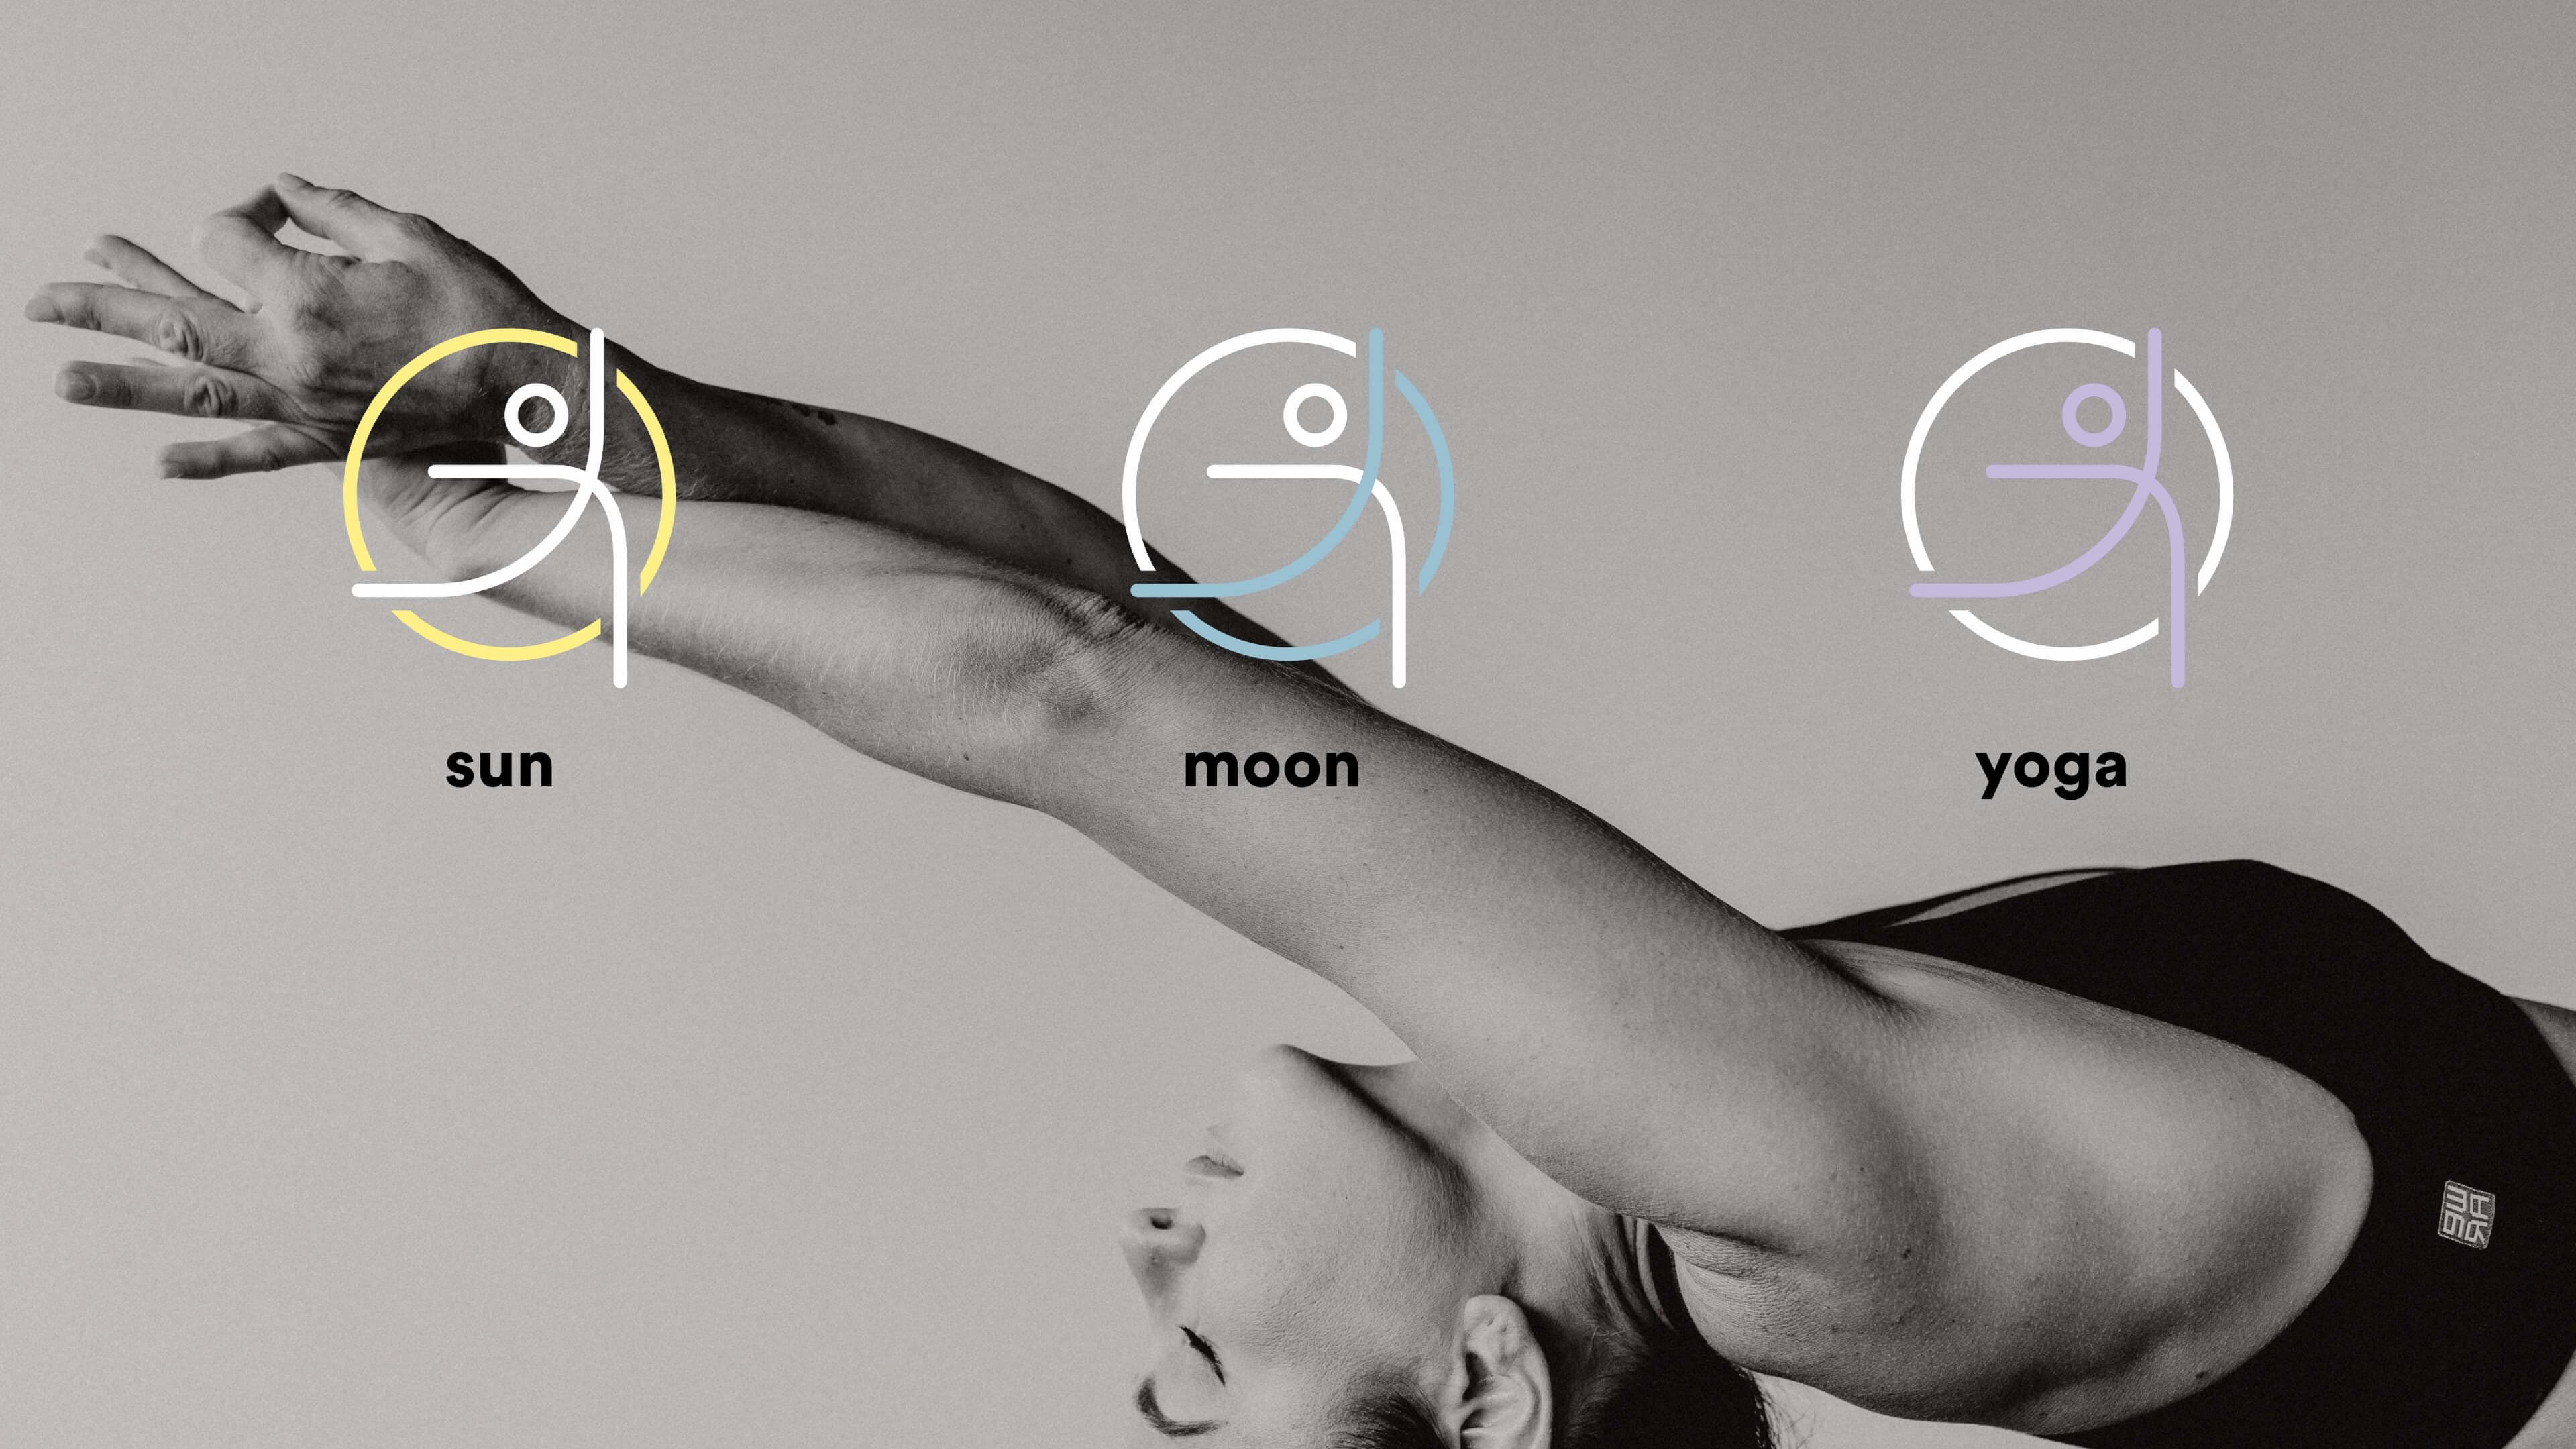 sun moon yoga - Kombination Bild und Markenwelt